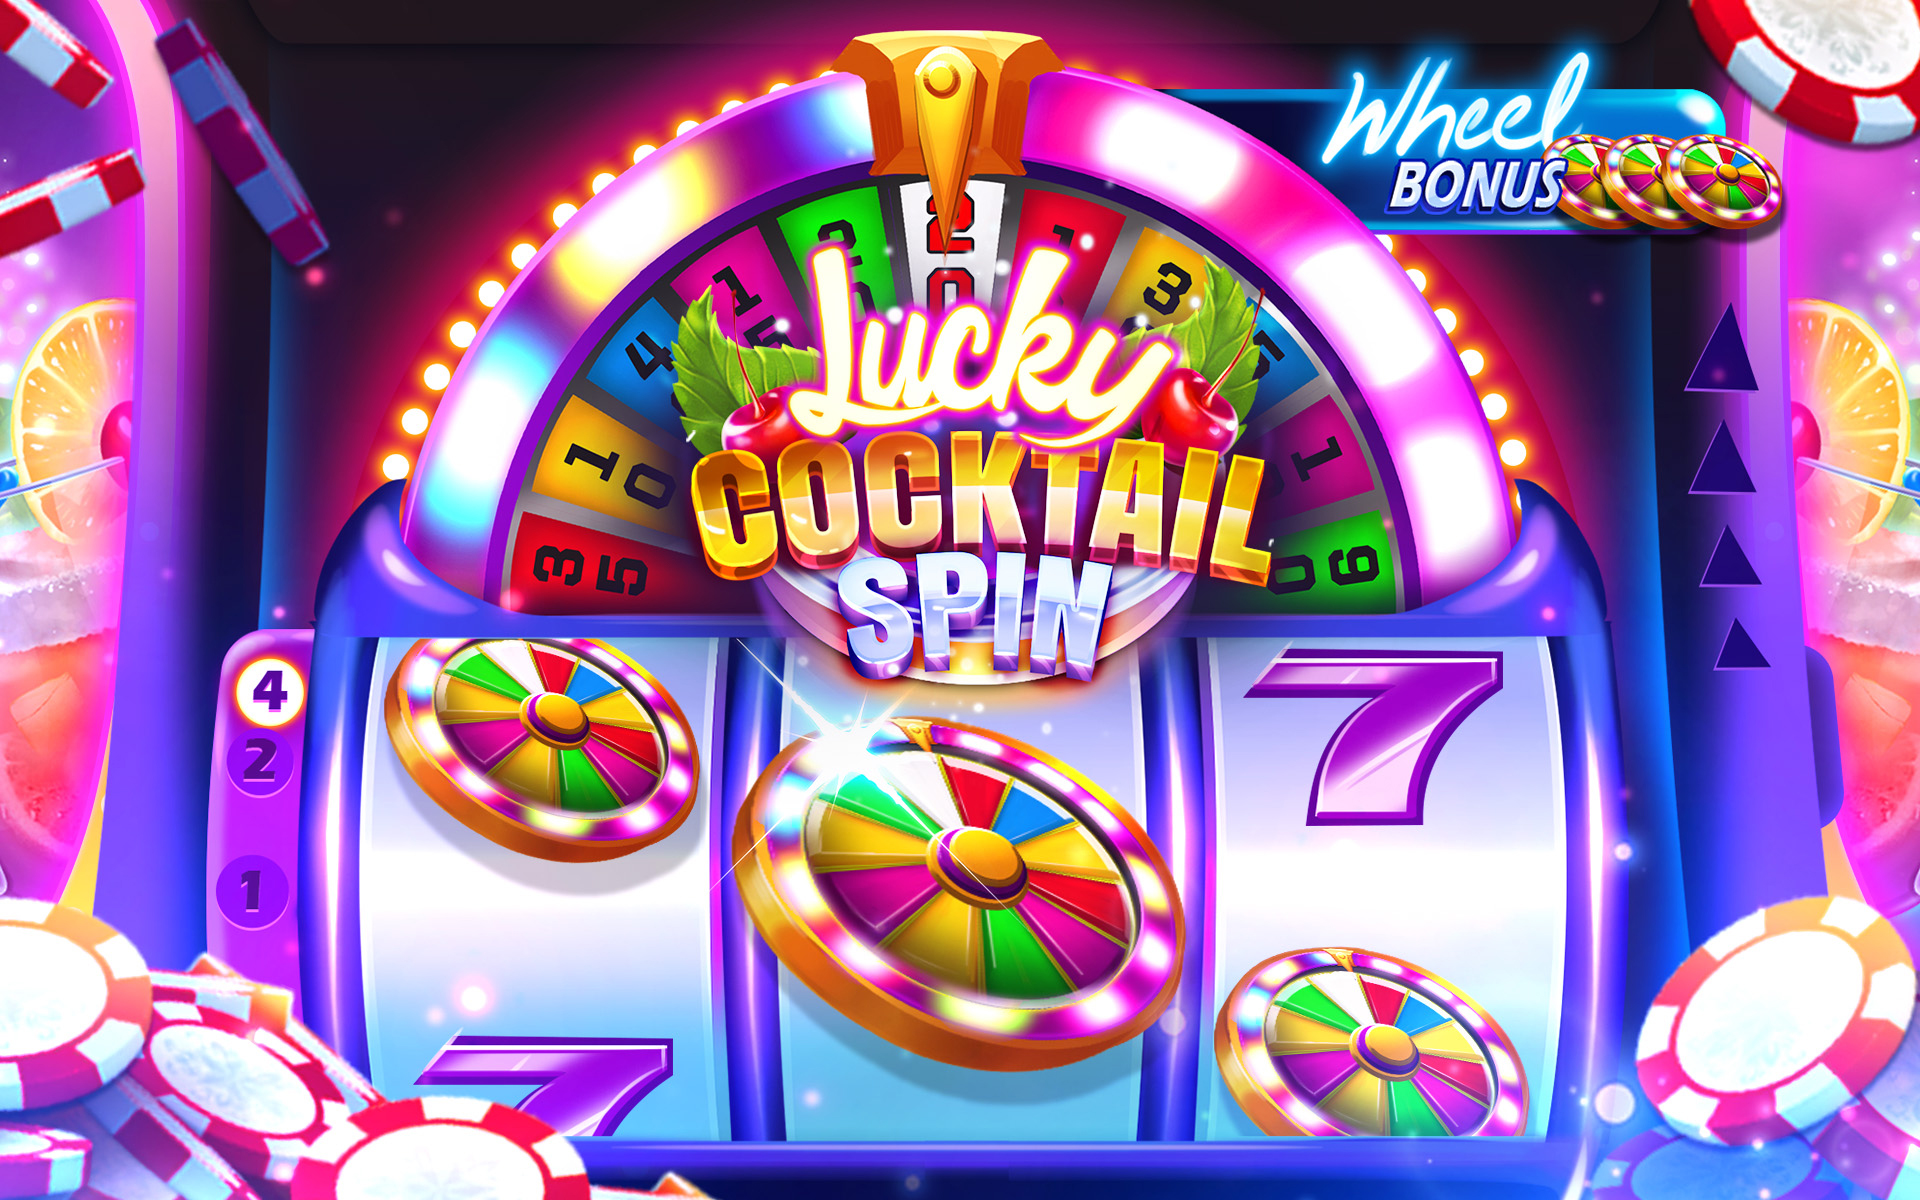 Gambling App